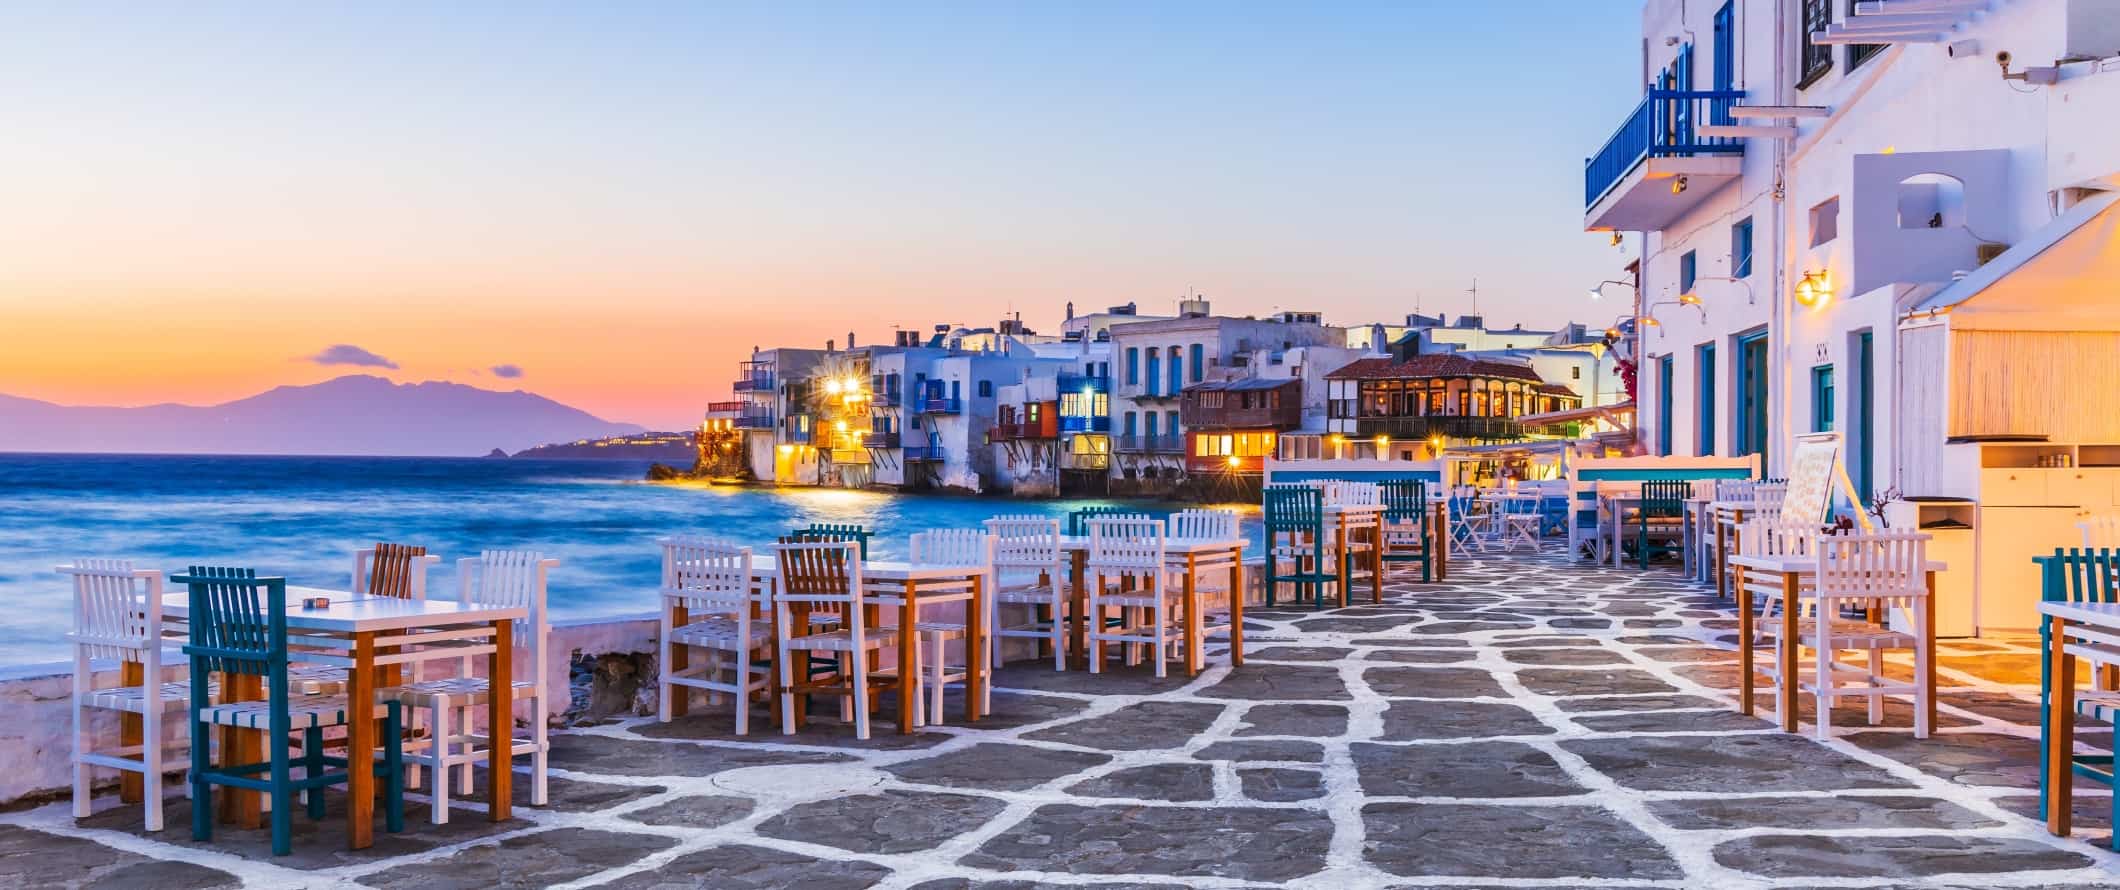 Aterro portuário e área de Veneza Velha na ilha de Mykonos, na Grécia.